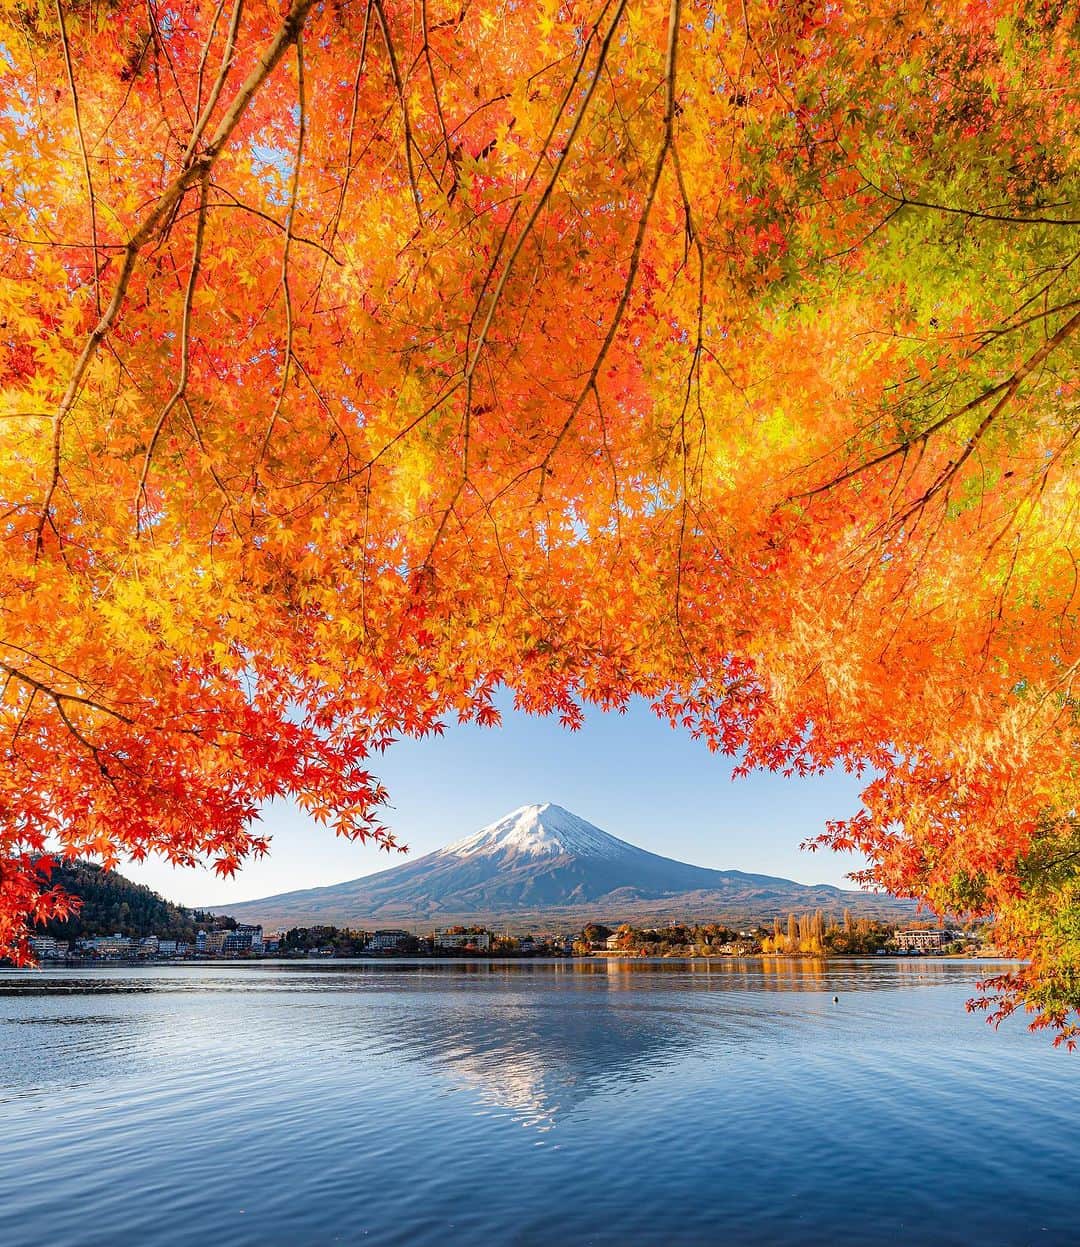 旅行メディア・じゃらん〈公式〉のインスタグラム：「#河口湖 水面に反射して、富士山が鏡のように湖面に映る“さかさ富士”で有名な絶景スポット。秋は紅葉と富士山の競演が楽しめます。「富士河口湖紅葉まつり」は、11月23日（木・祝）まで開催予定です。 . . ━━━━━━━━━━━━━━━ 📍 山梨県「河口湖」 📷 @shimiti_japan 📅 2022.11.13 ━━━━━━━━━━━━━━━ . . #jalan_travel　をつけていただいた中からpick upしました 素敵なお写真をありがとうございました┈✈︎  .  . ☑ あらかじめ最新情報をご確認の上、お出かけください。 ☑ #jalan_travel をつけて、ぜひ今までの旅行先の思い出写真を投稿してください。このアカウントでご紹介させていただきます。(じゃらんニュースでも紹介される可能性があります） . . . . . . #いつか行きたい #じゃらん #観光 #観光地 #観光スポット #旅行 #旅行好きな人と繋がりたい #旅行好き  #japantravelphoto #japantrip #japantravel #国内旅行 #絶景 #絶景スポット #誰かに見せたい景色 #誰かに見せたい風景 #山梨 #山梨観光 #山梨旅行 #yamanashi」